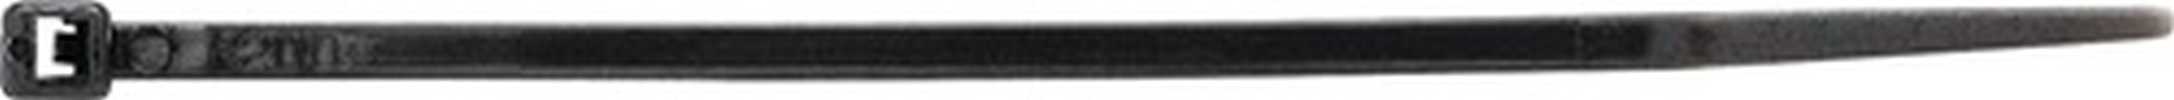 Kabelbinder  Länge 450 mm Breite 7,6 mm Polyamid schwarz UV-beständig